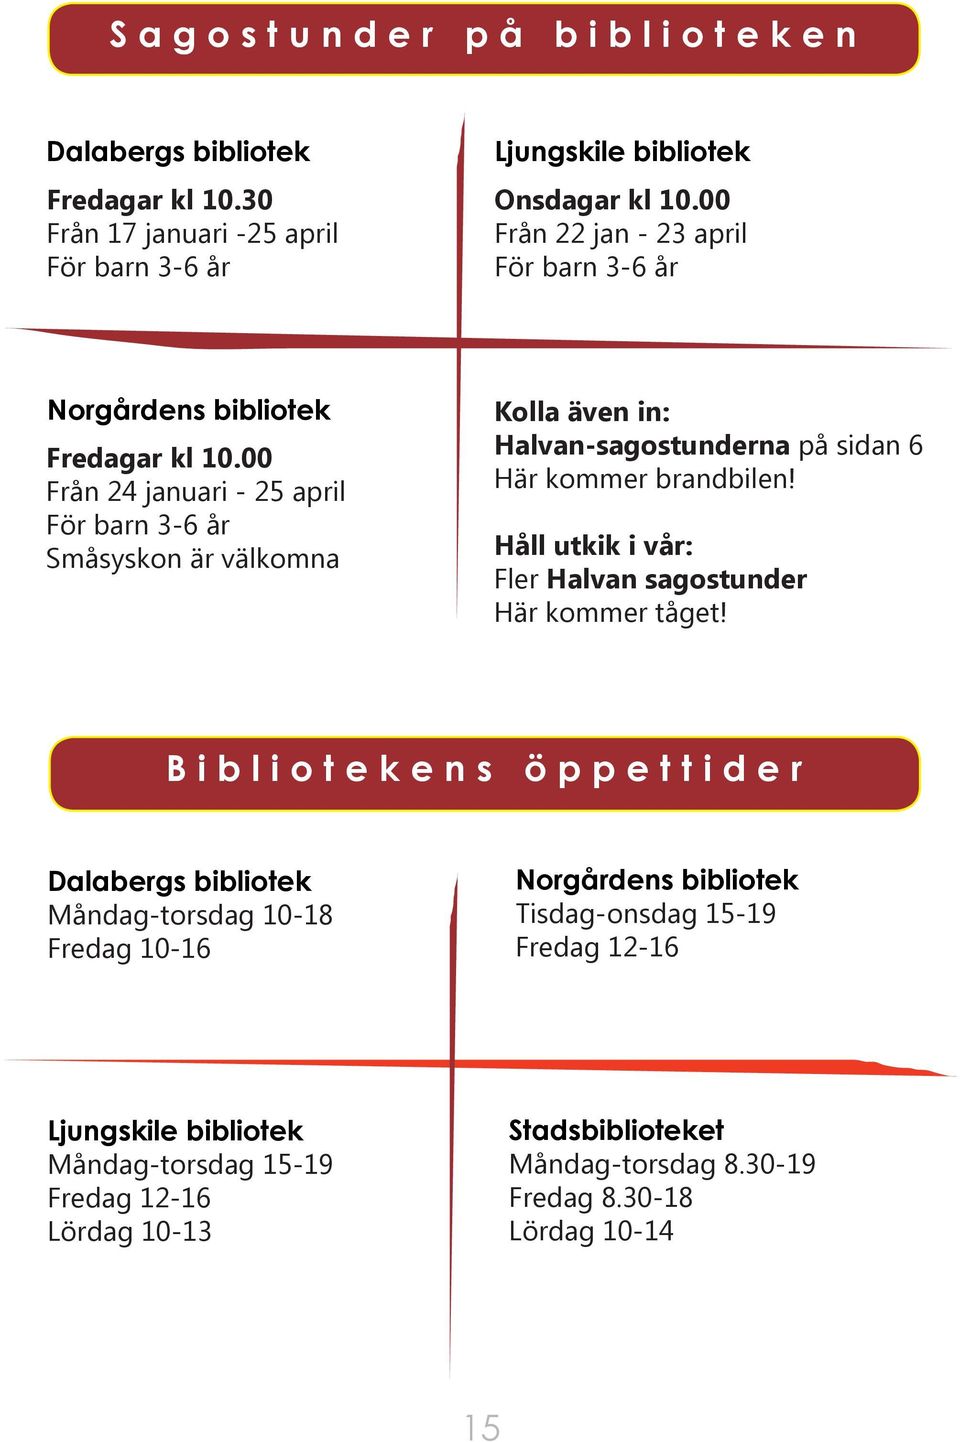 00 Från 24 januari - 25 april För barn 3-6 år Småsyskon är välkomna Kolla även in: Halvan-sagostunderna på sidan 6 Här kommer brandbilen!